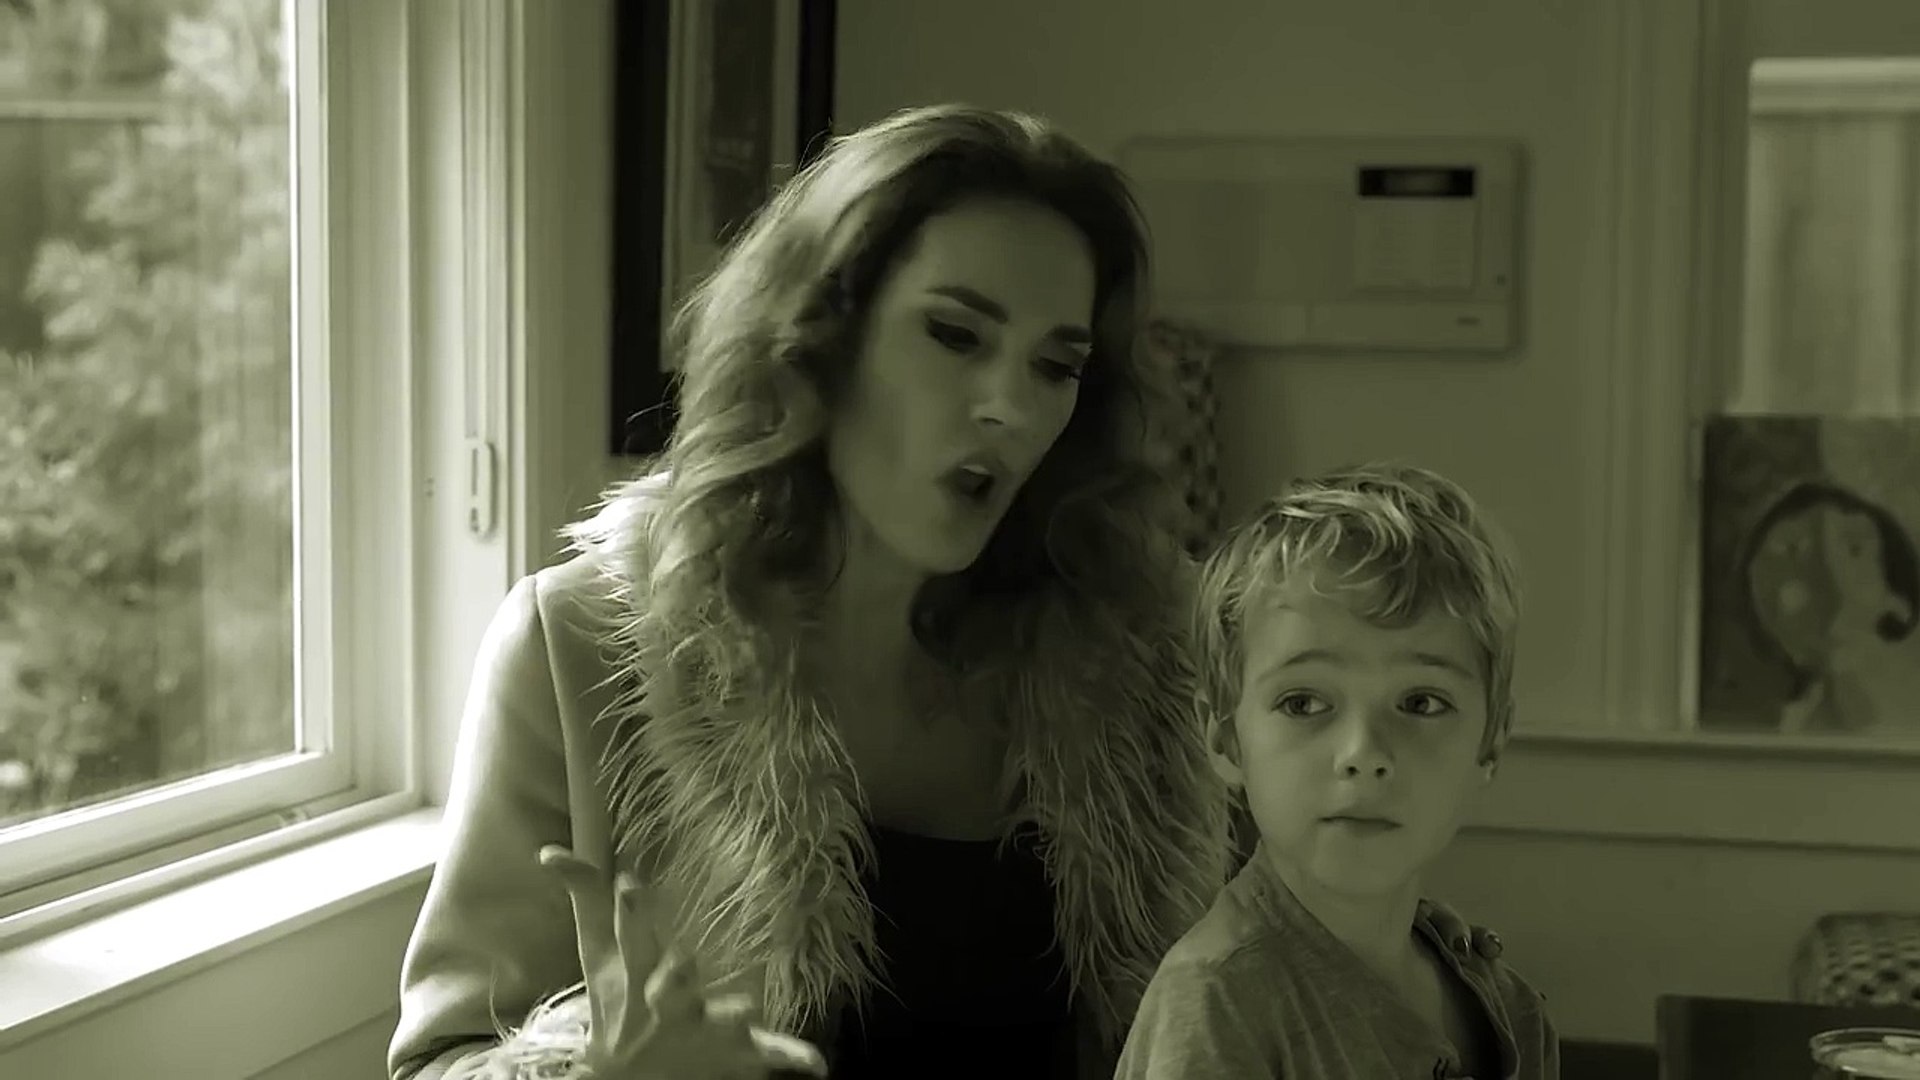 Adele - Hello Mom Parody